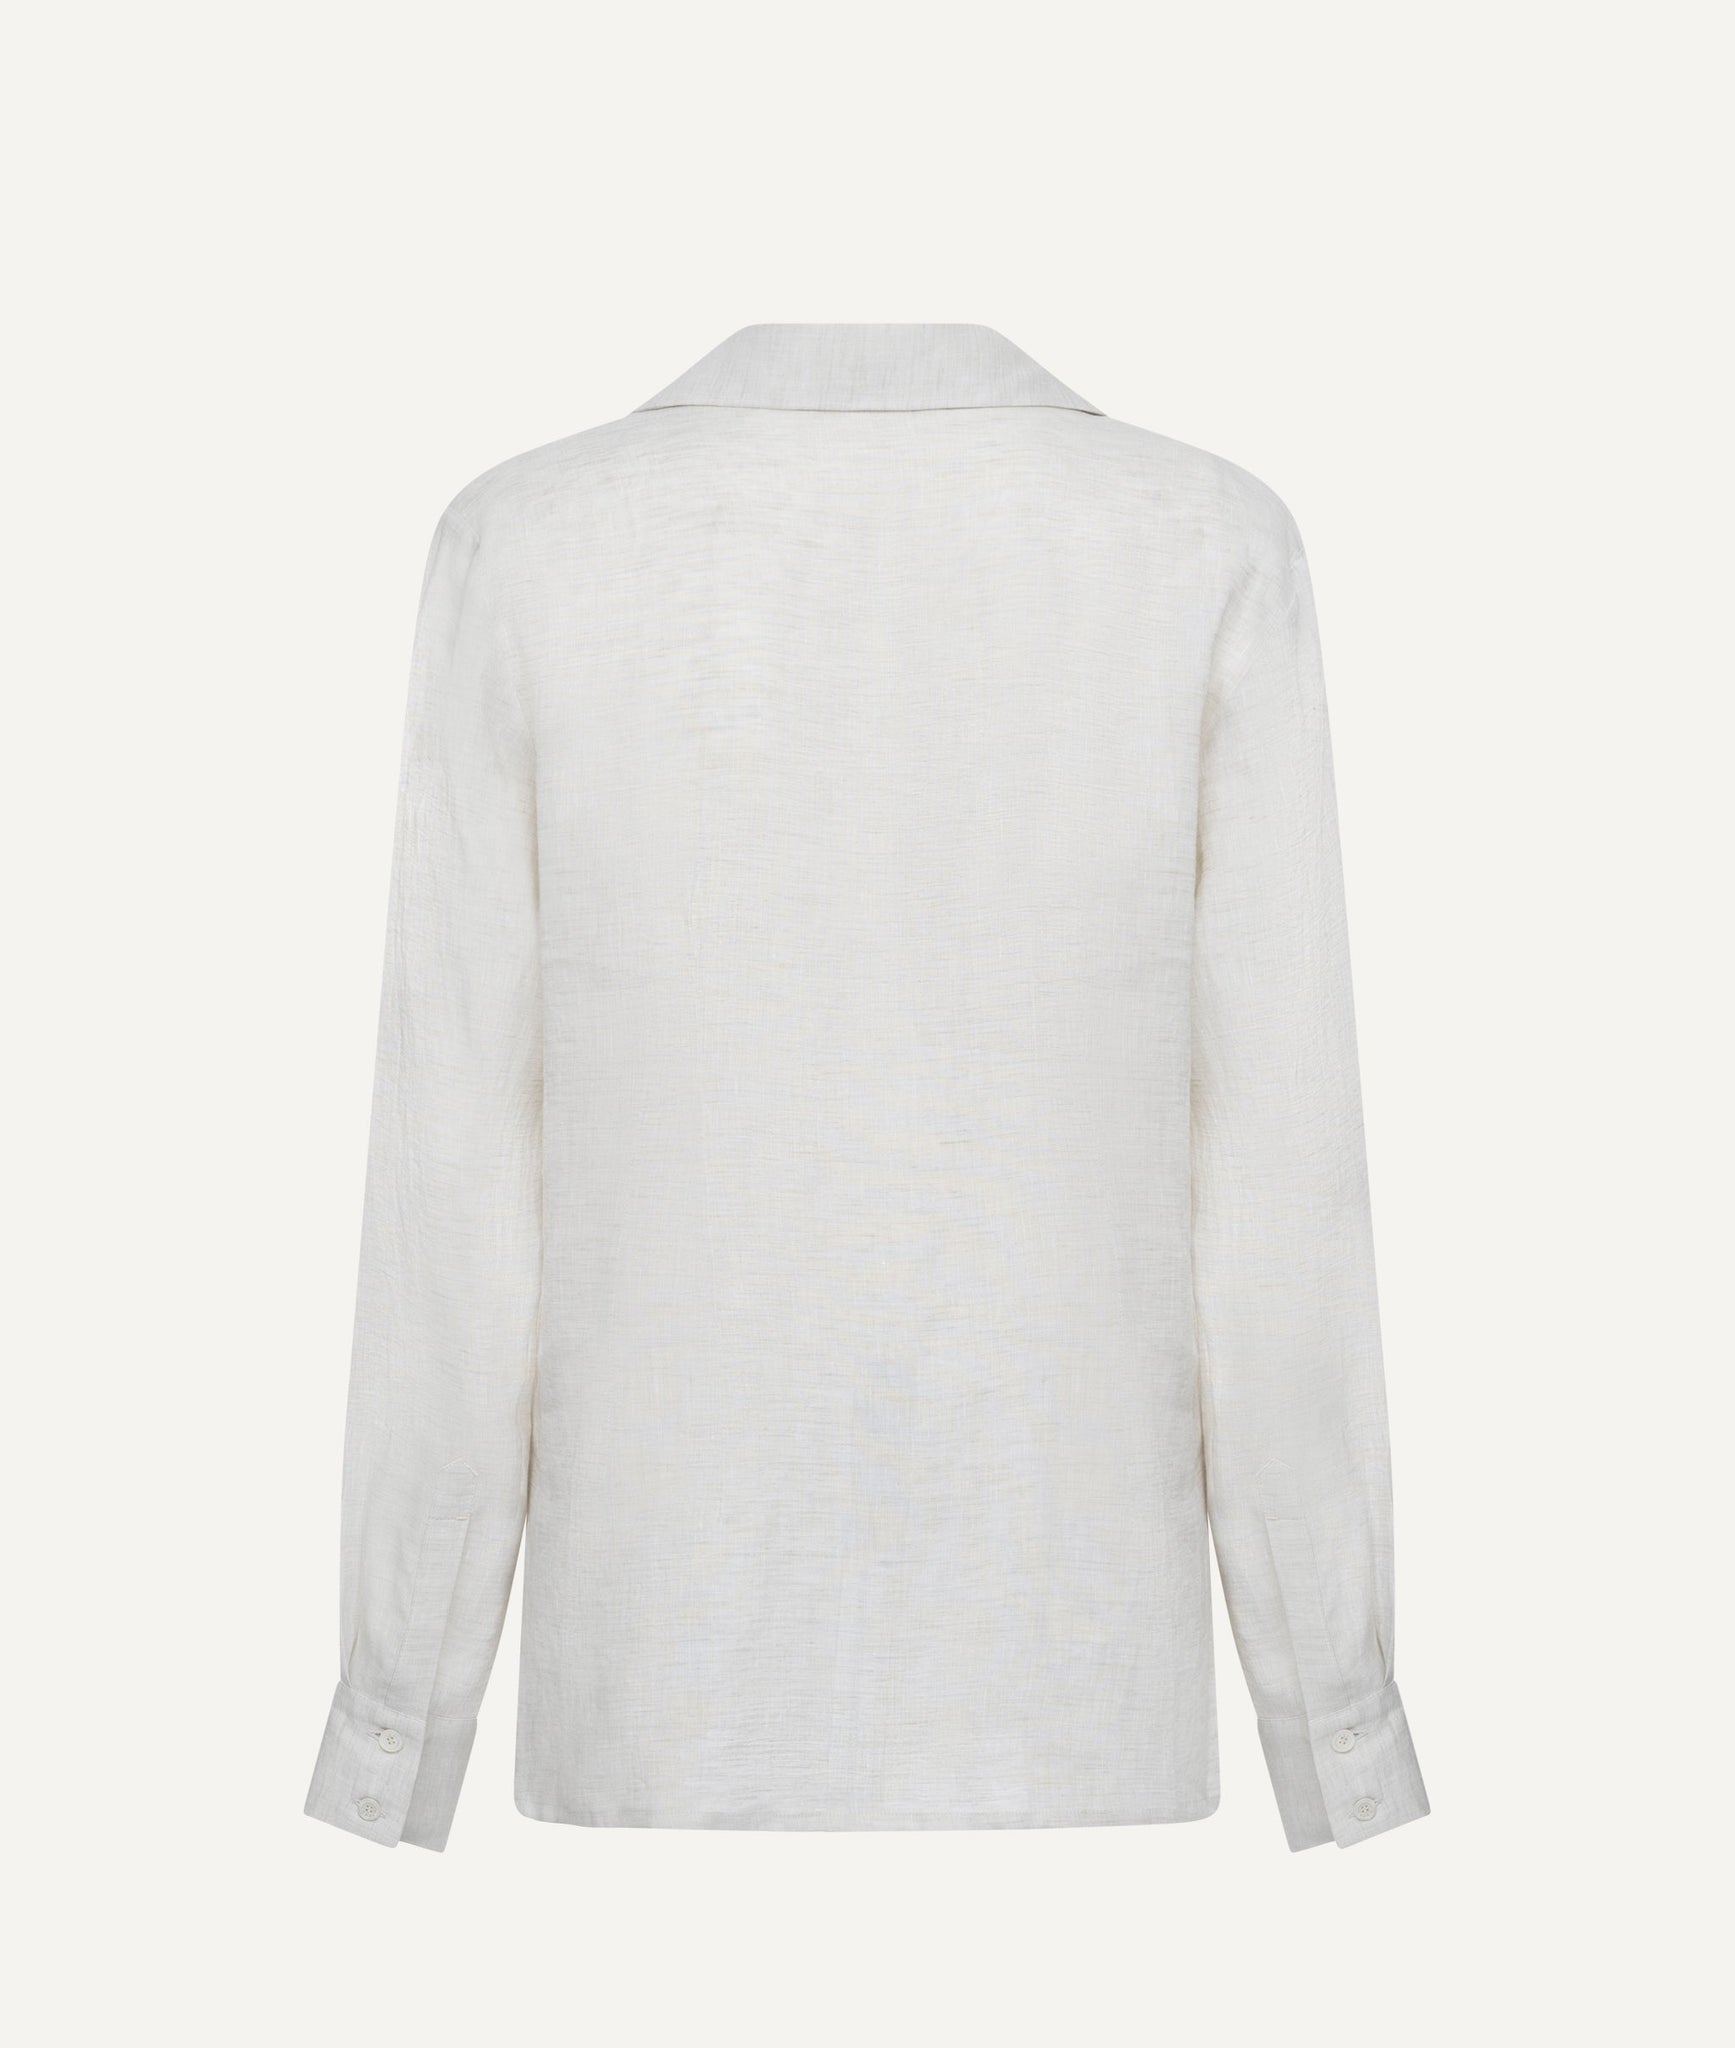 Kiton - Buttonless Shirt in Linen